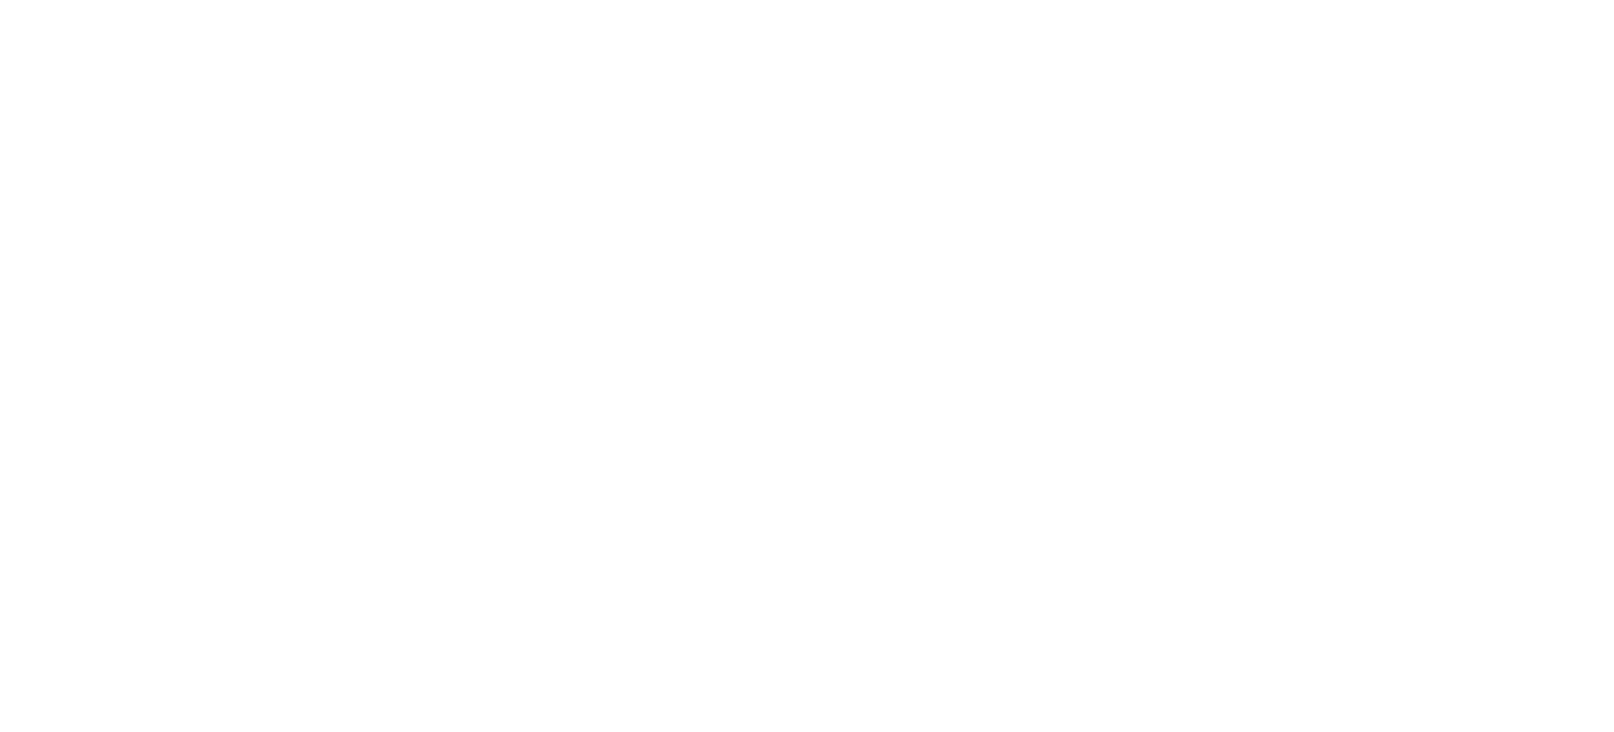 CSN Mineração logo large for dark backgrounds (transparent PNG)